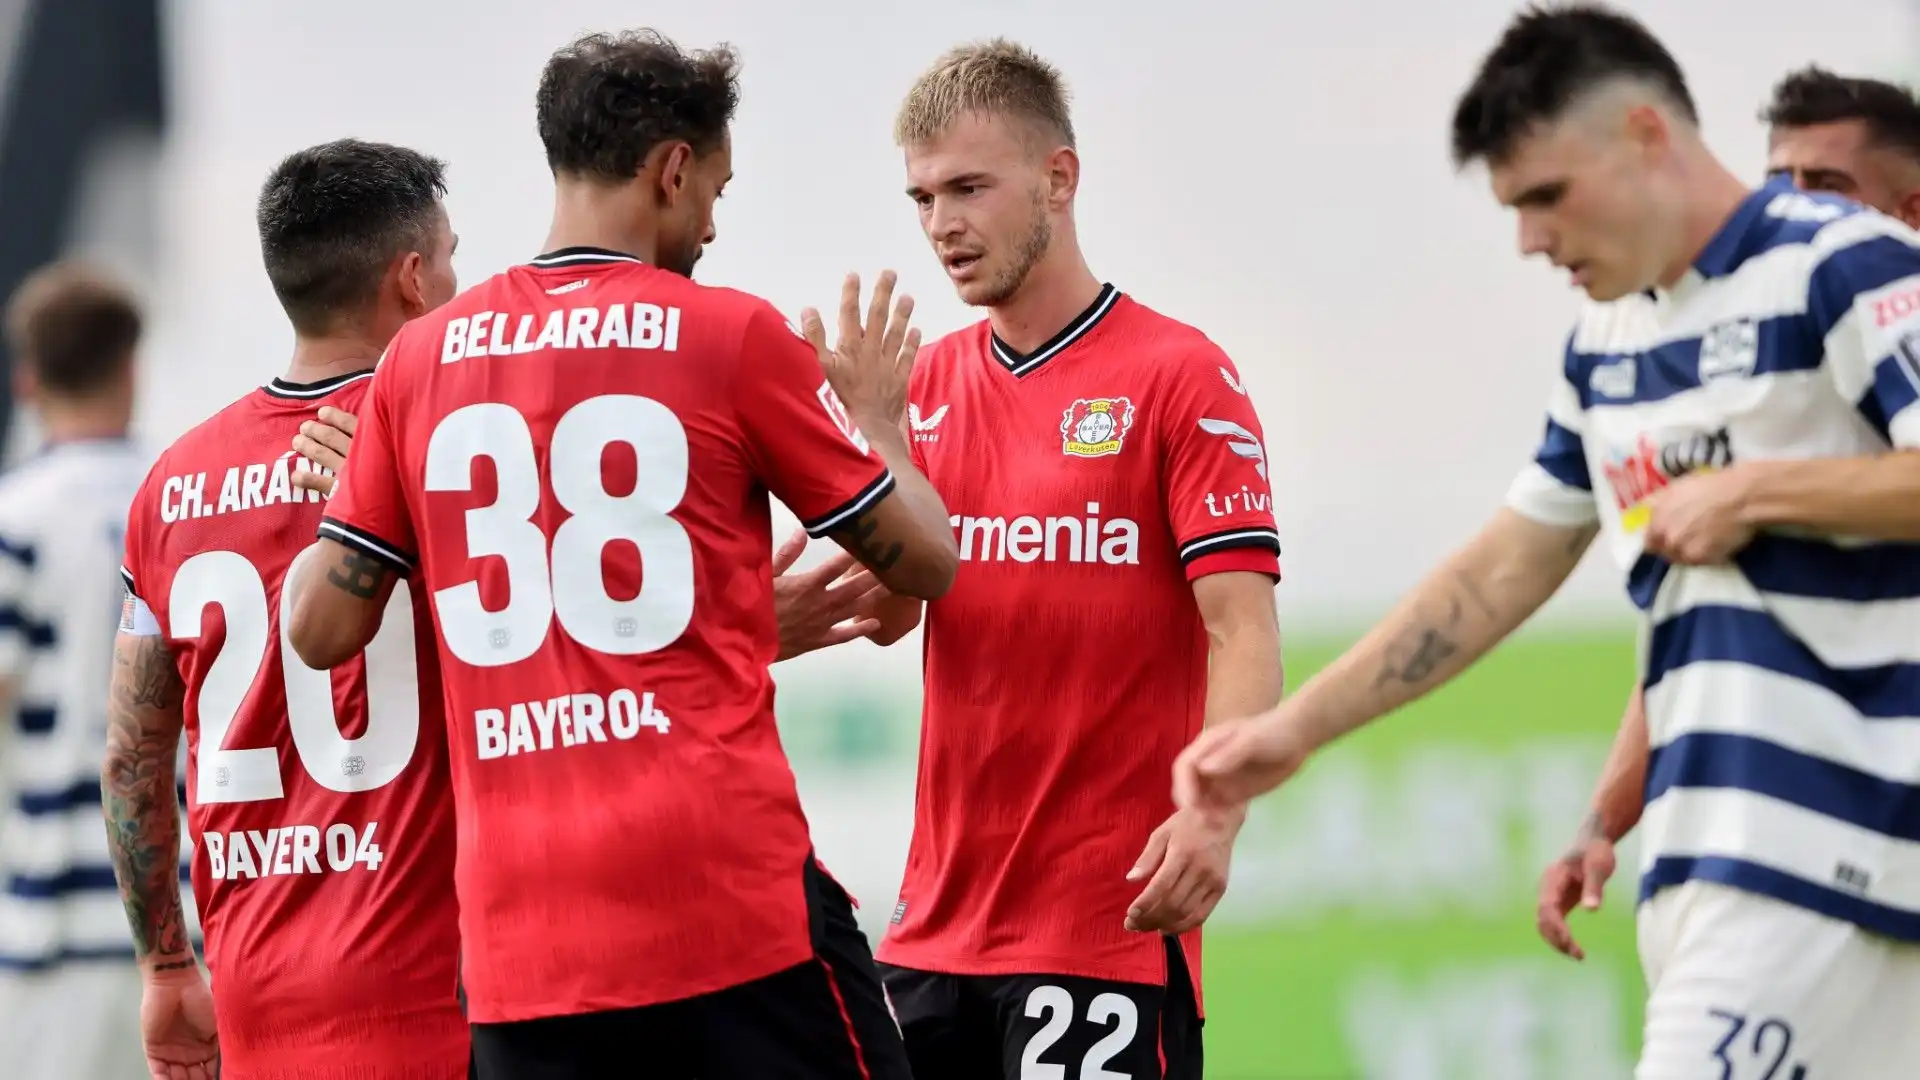 L'ex calciatore del Bayer Leverkusen non ha fretta di decidere: si è preso del tempo per riflettere anche con la sua famiglia